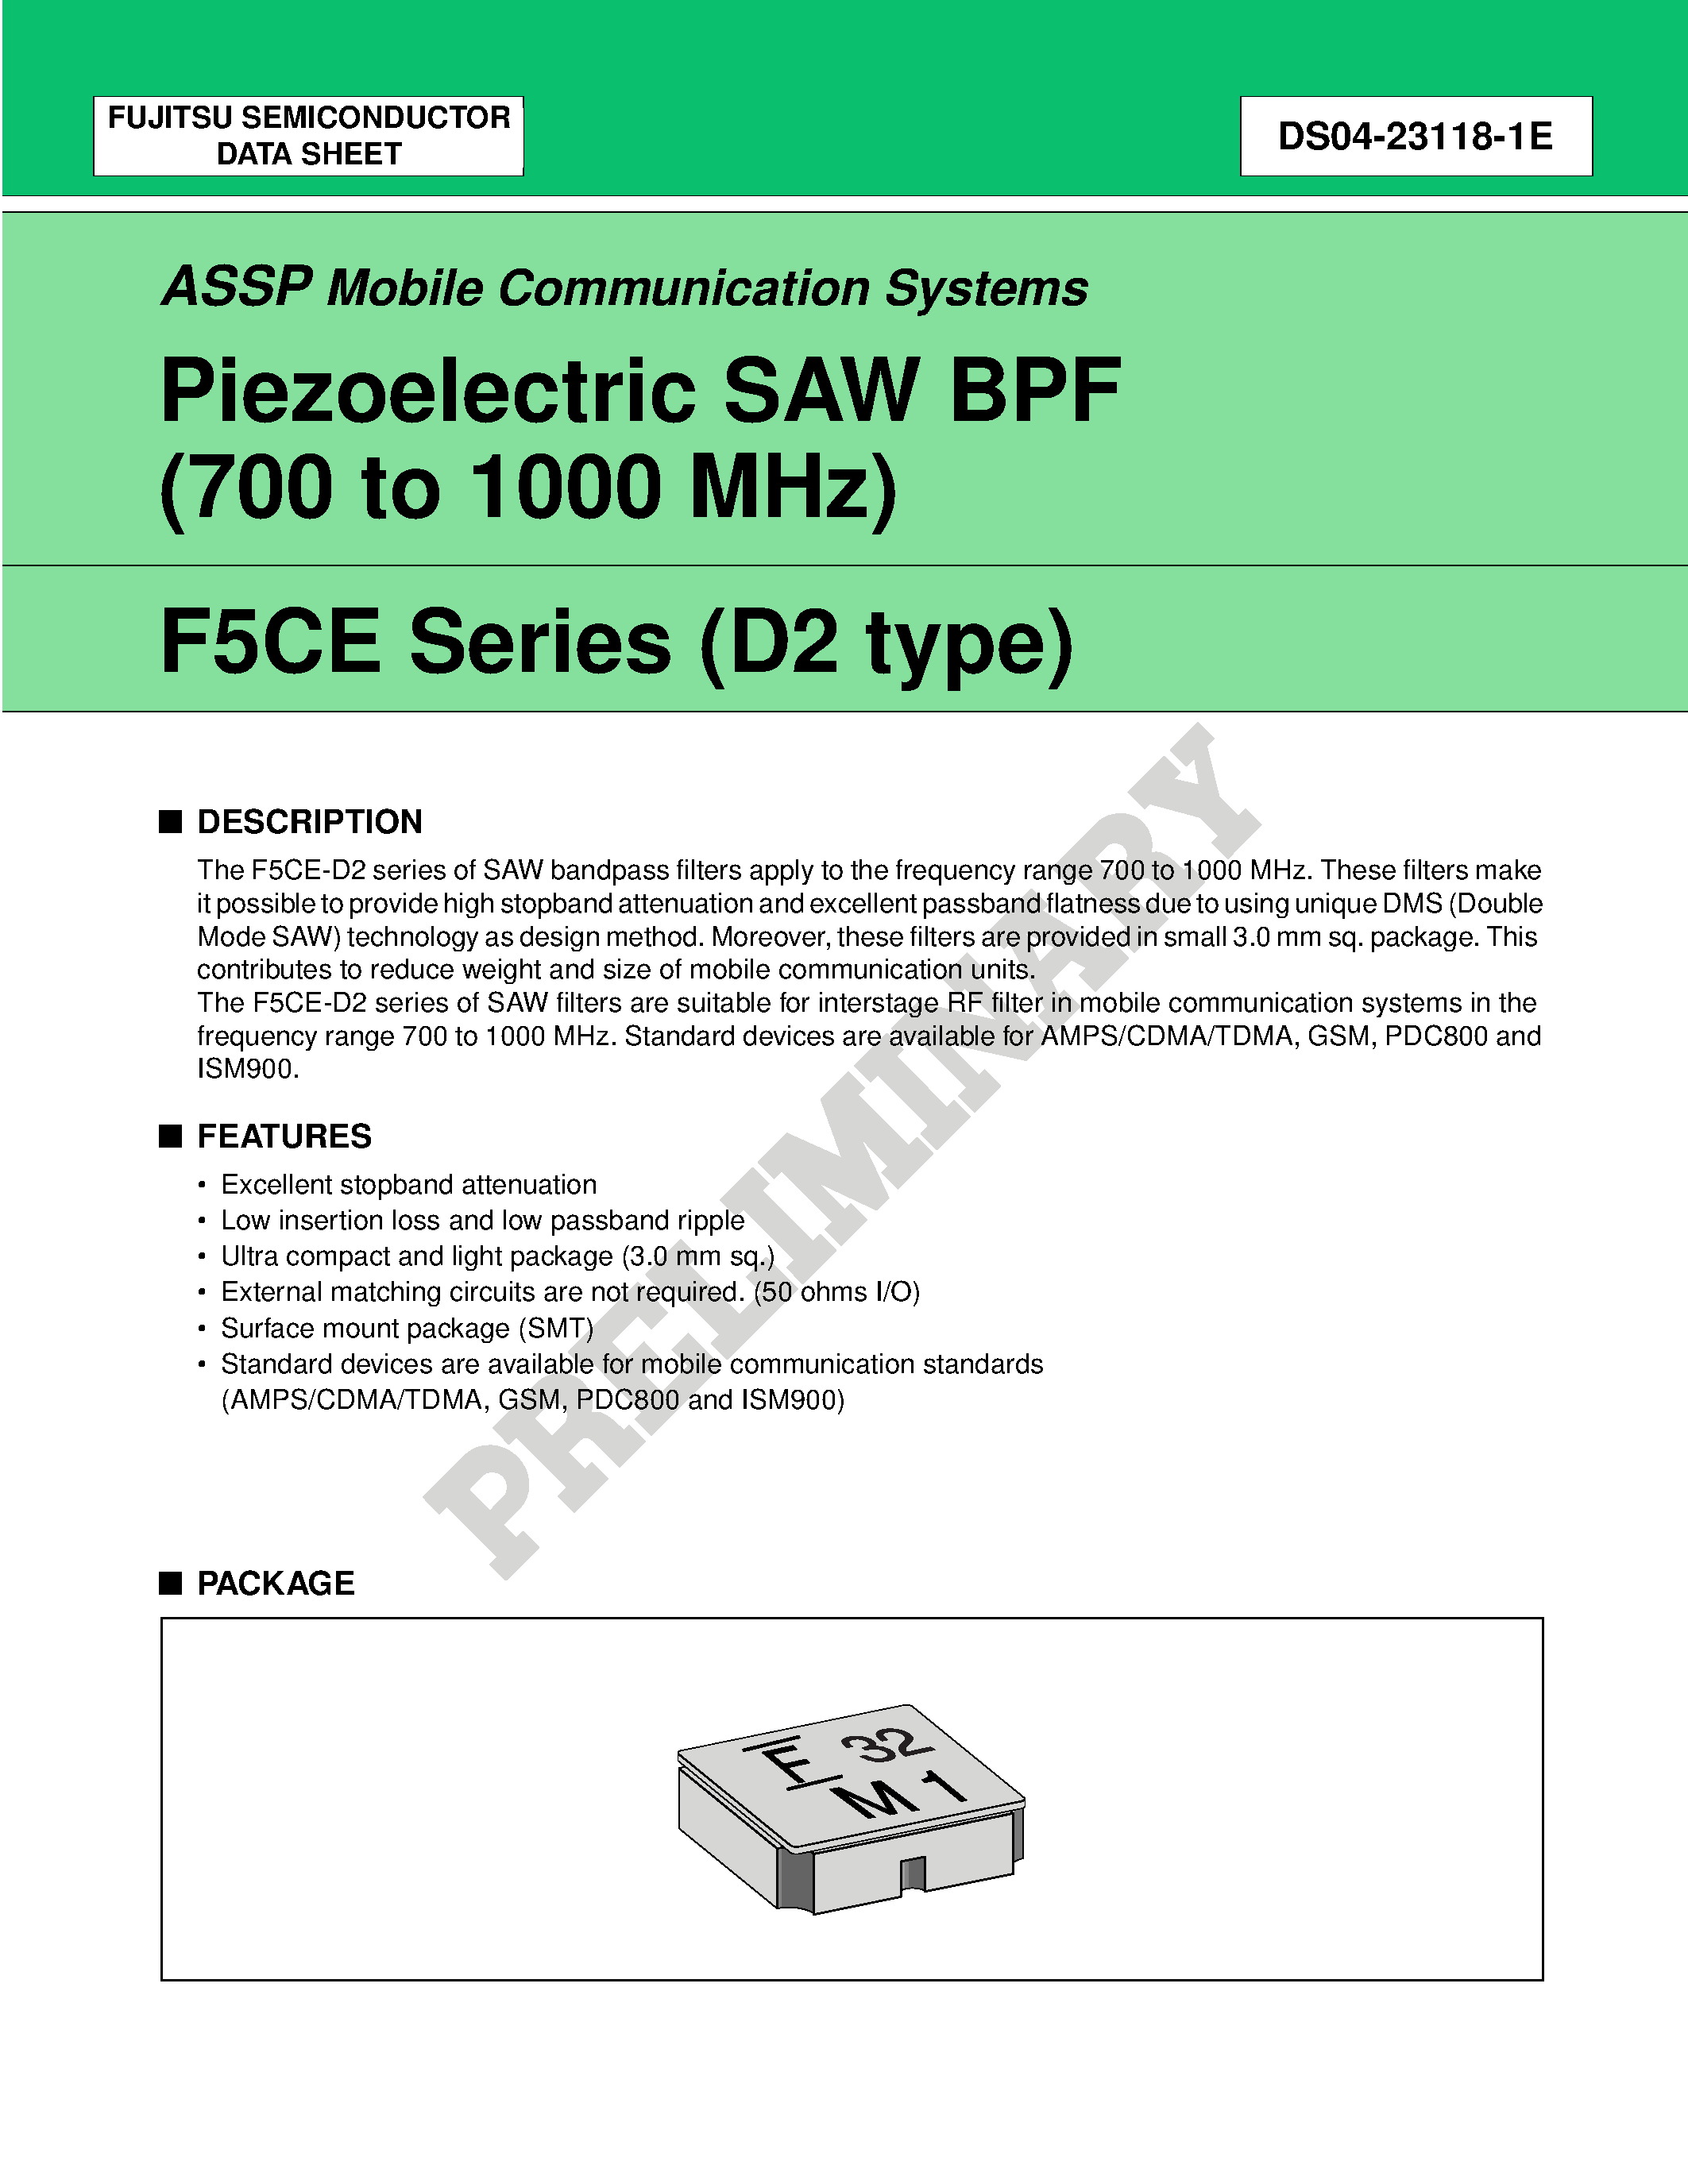 Datasheet FAR-F5CE-947M50-K228-U - Piezoelectric SAW BPF (700 to 1700 MHz) page 1